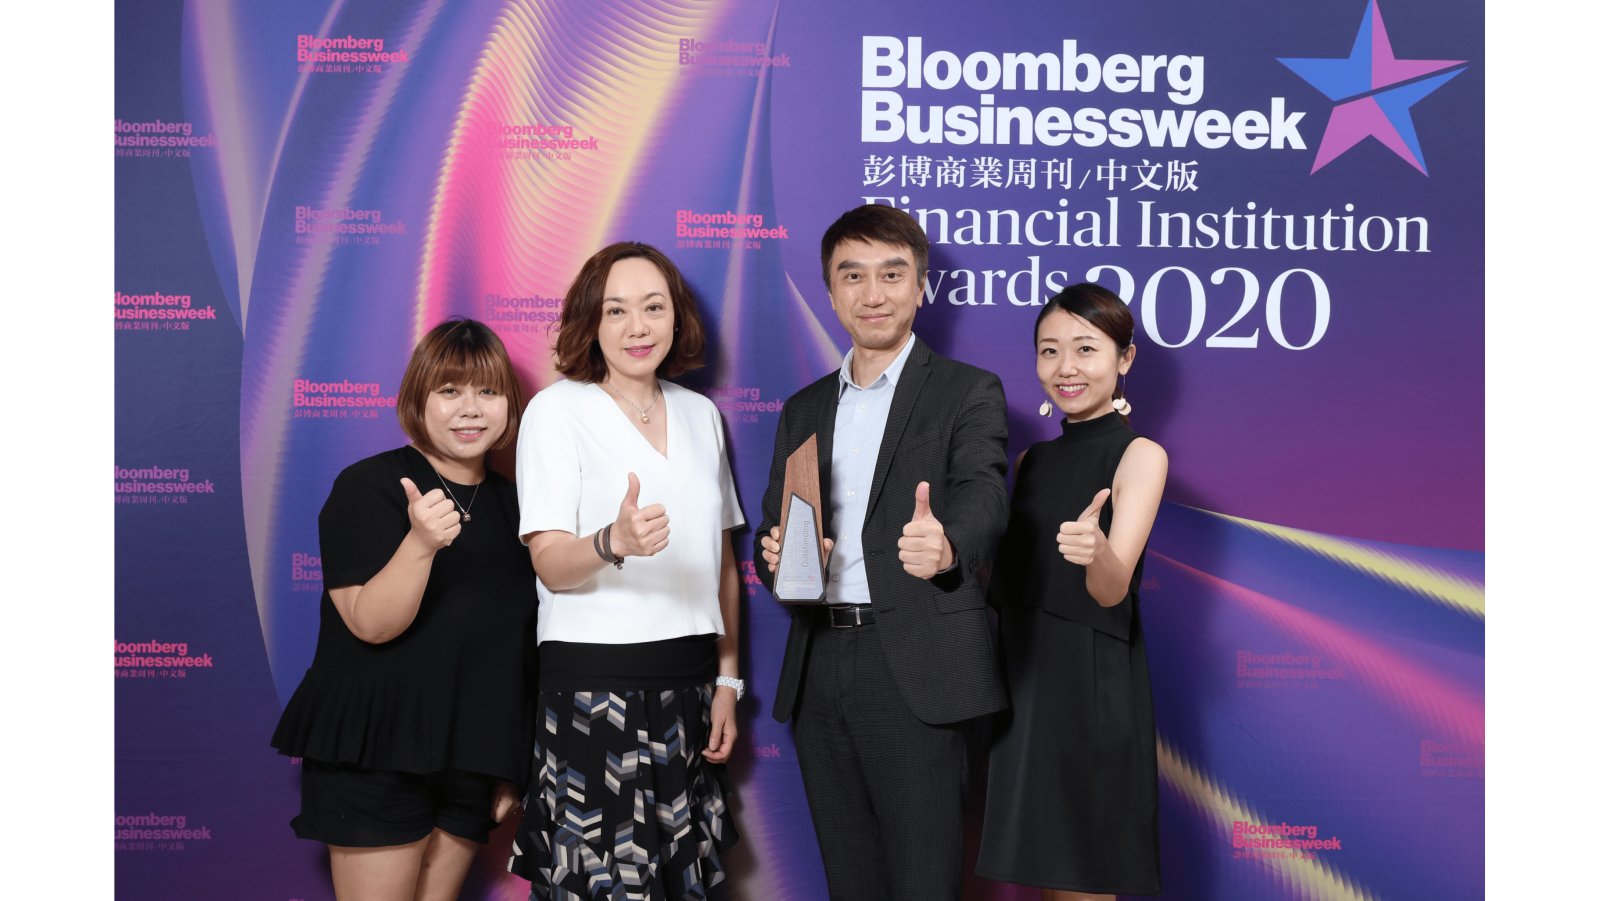 
                                                富通保險於《彭博商業周刊/中文版》金融機構大獎2020贏得三項傑出大獎